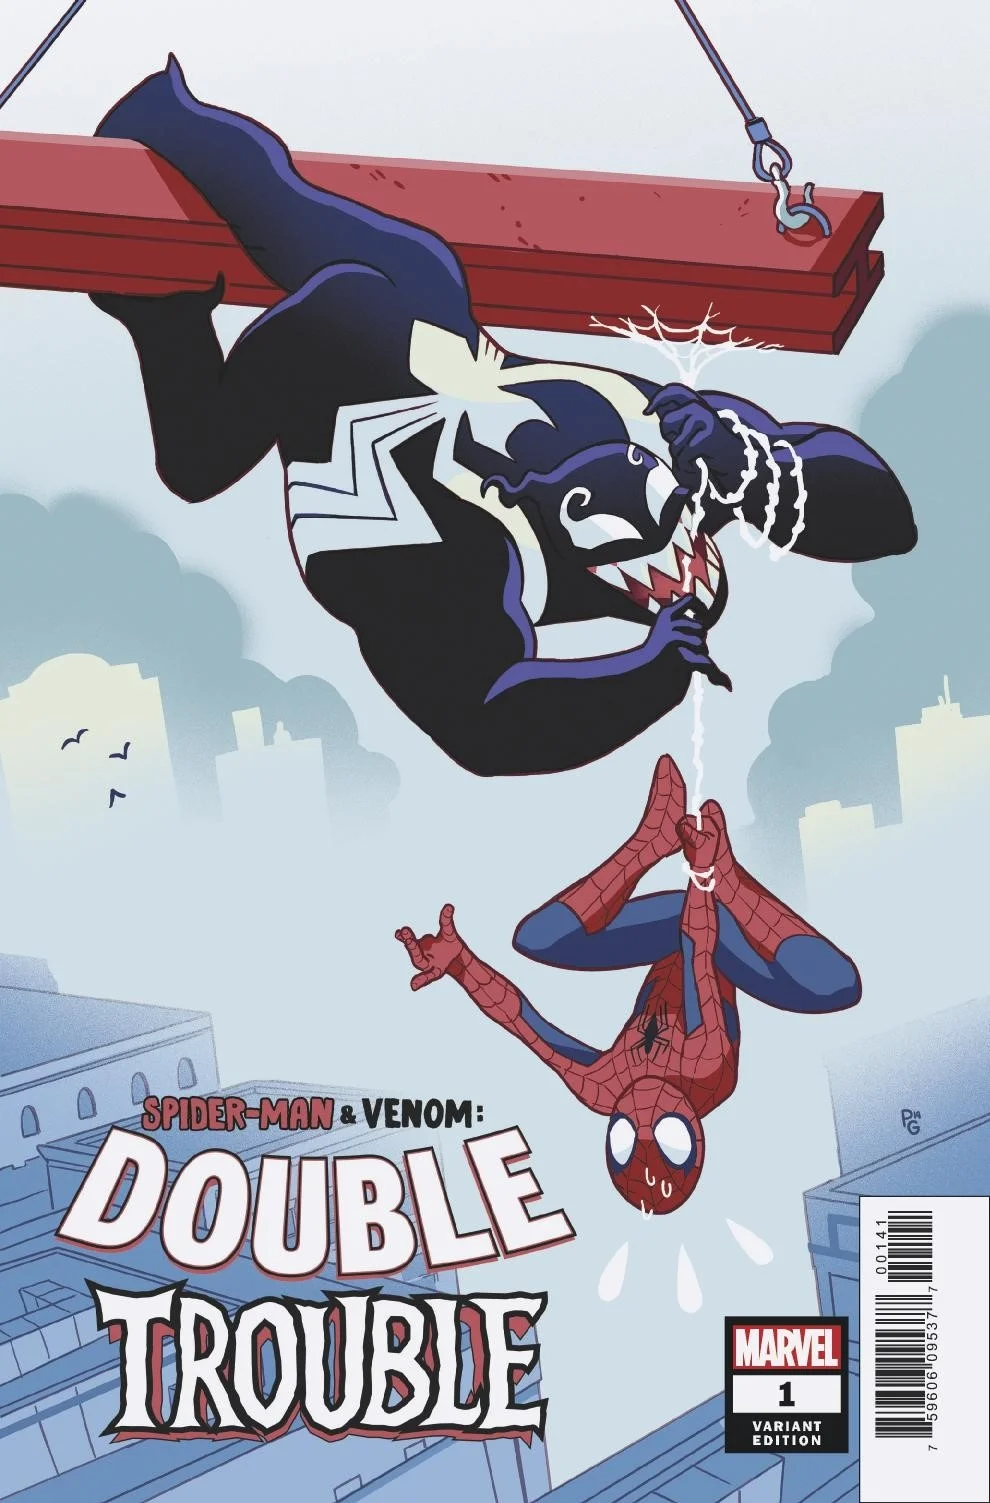 Человек-паук верхом на Веноме на альтернативных обложках к новому комиксу - фото 2